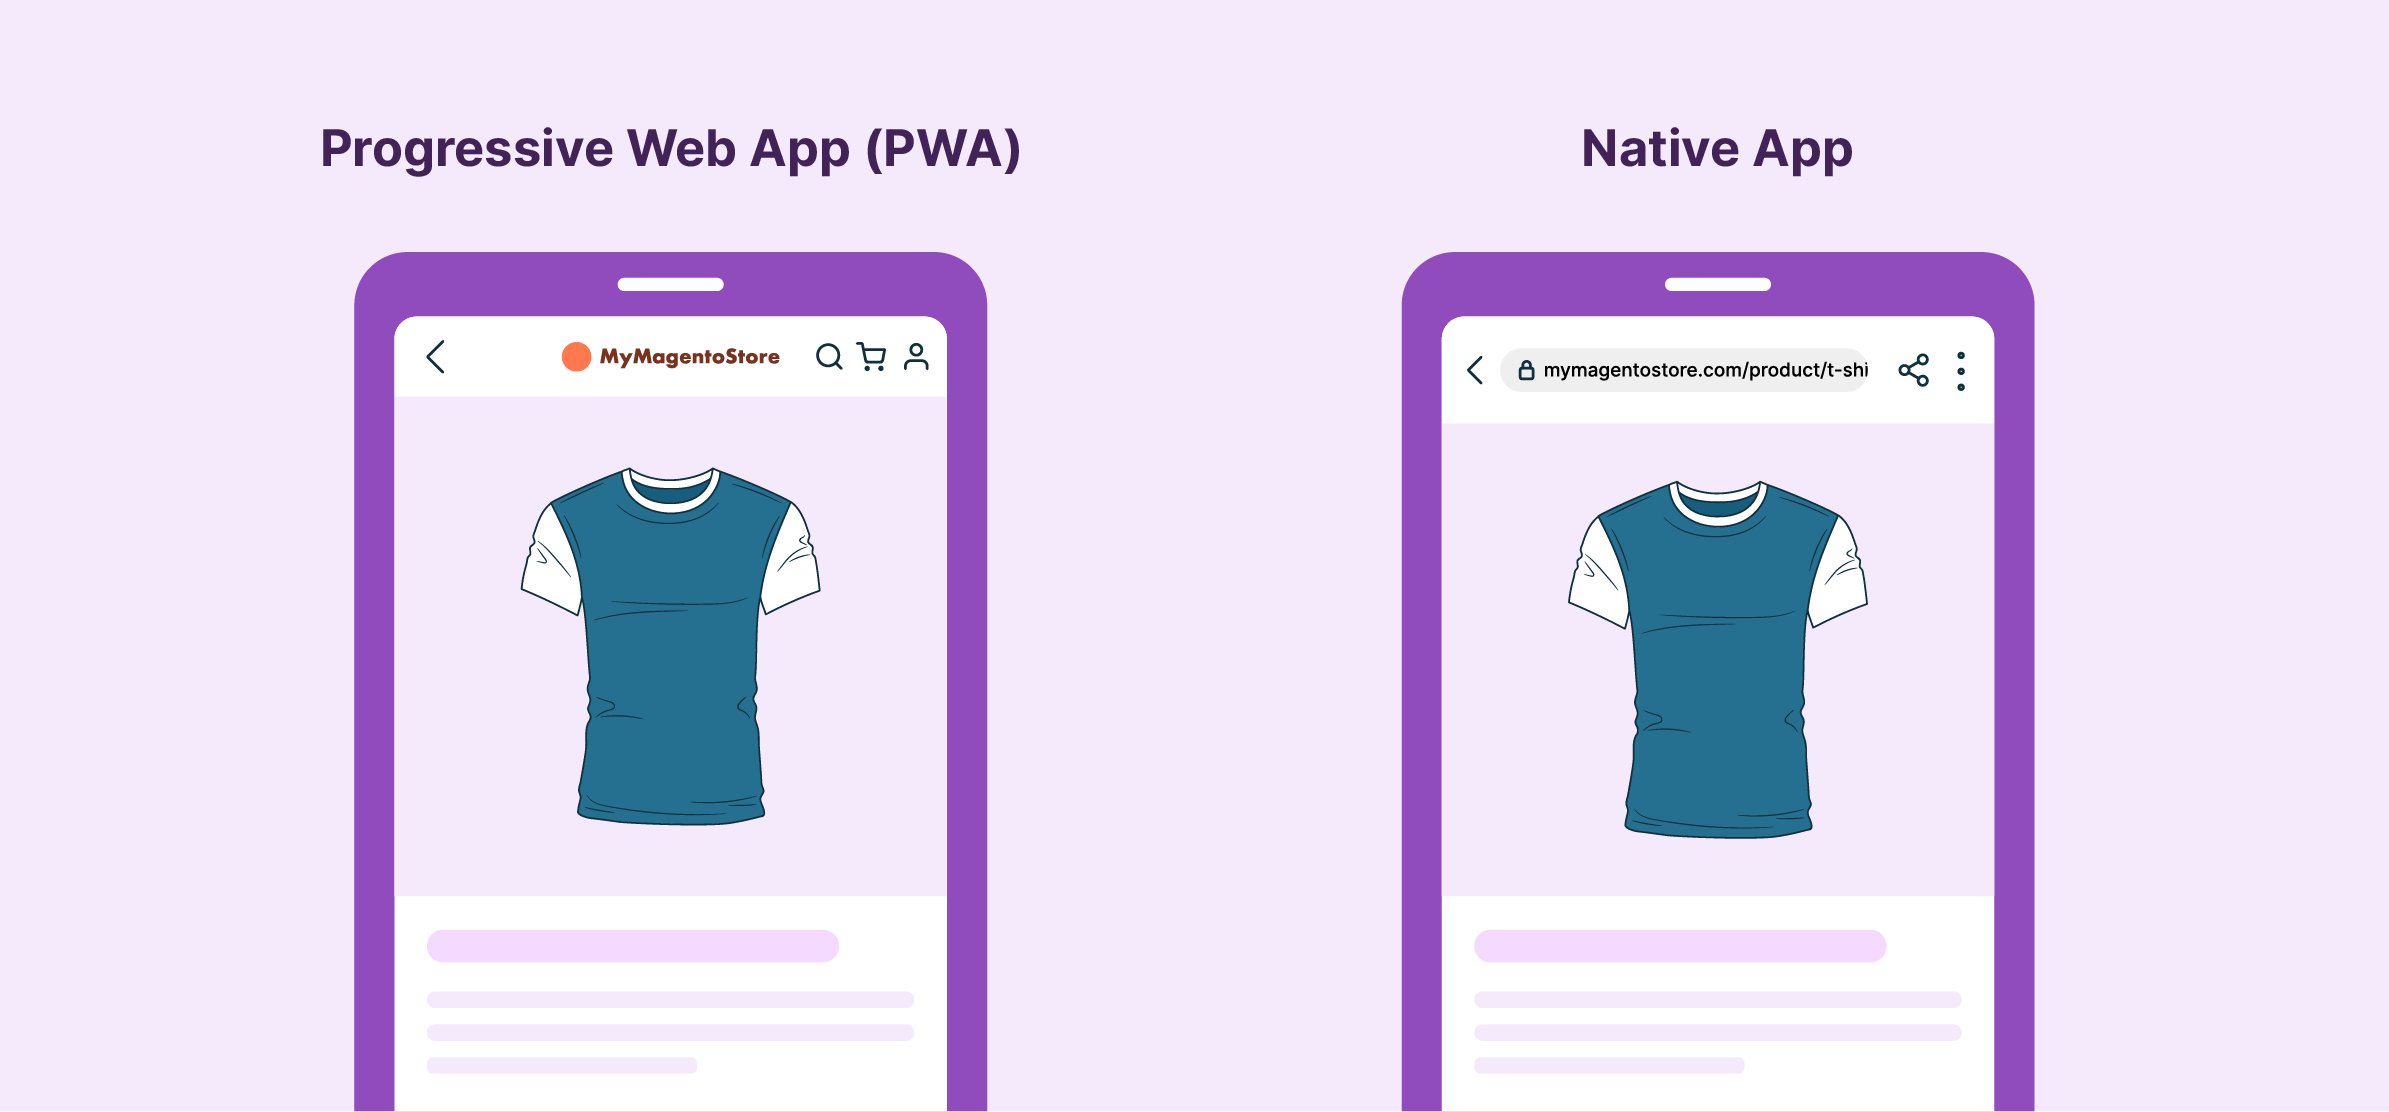 Progressive Web App (PWA) explained